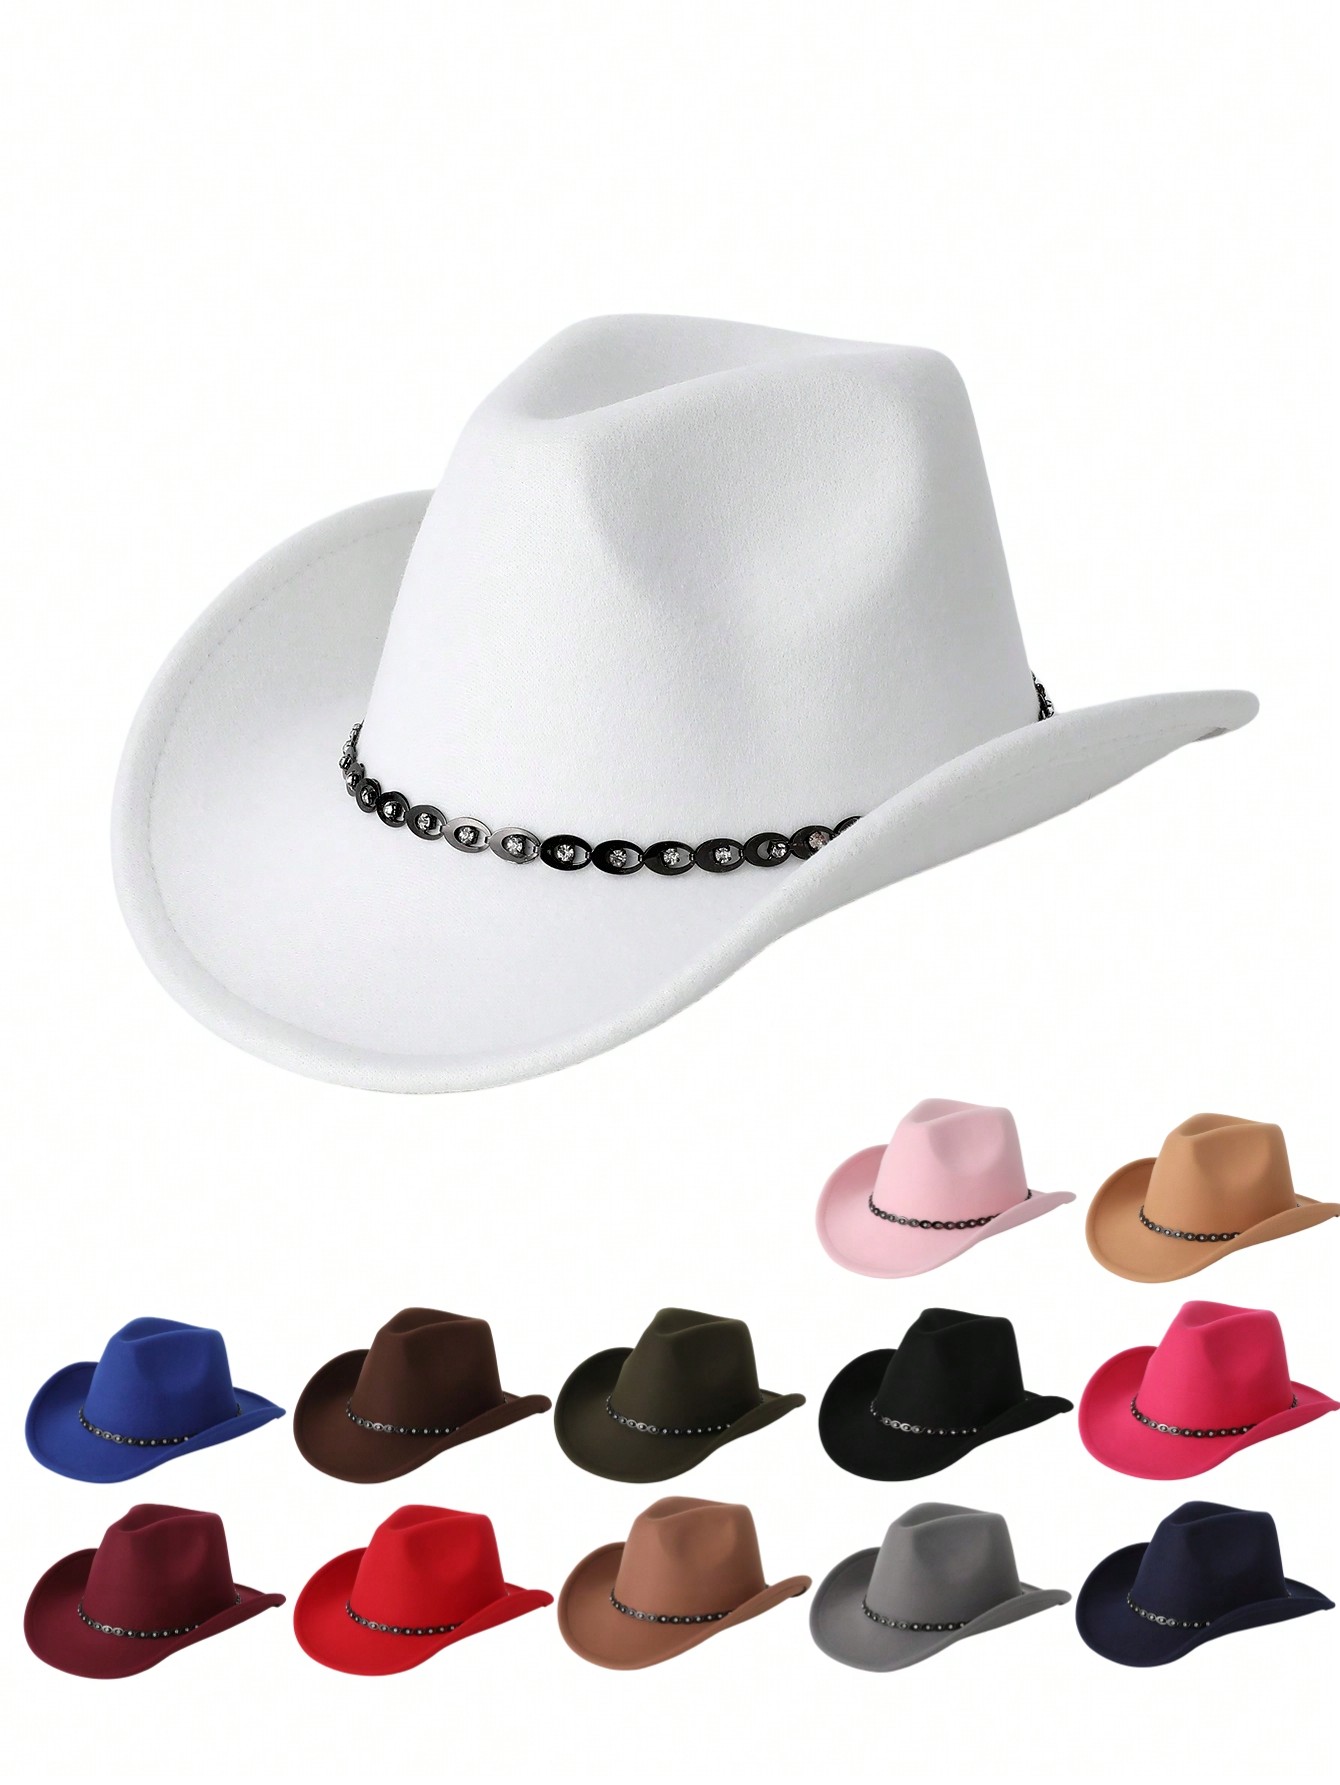 1 шт. из сплава и стразов, многоцветный ковбойская шляпа с перьями шляпа невесты ковбойская шляпа для девичника искусственная шляпа для невесты ковбойская шляпа для дискотеки